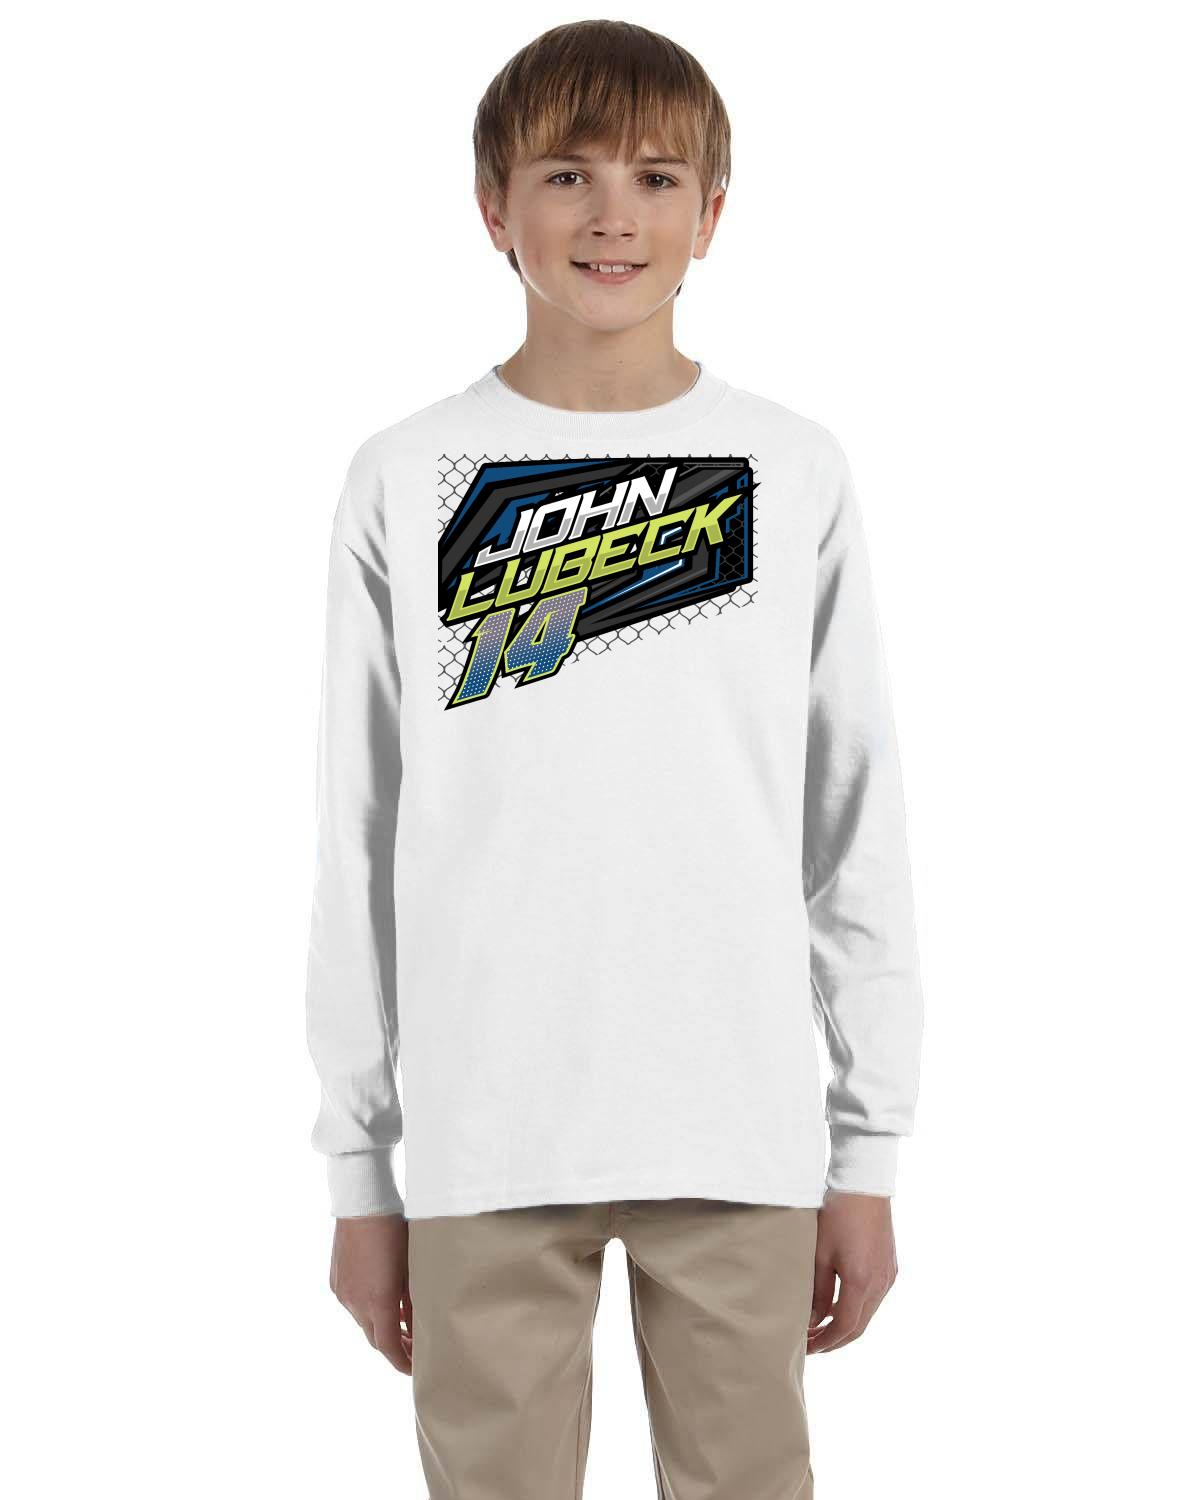 John Lubeck / Upfront Motorsports Youth Long-Sleeve T-Shirt